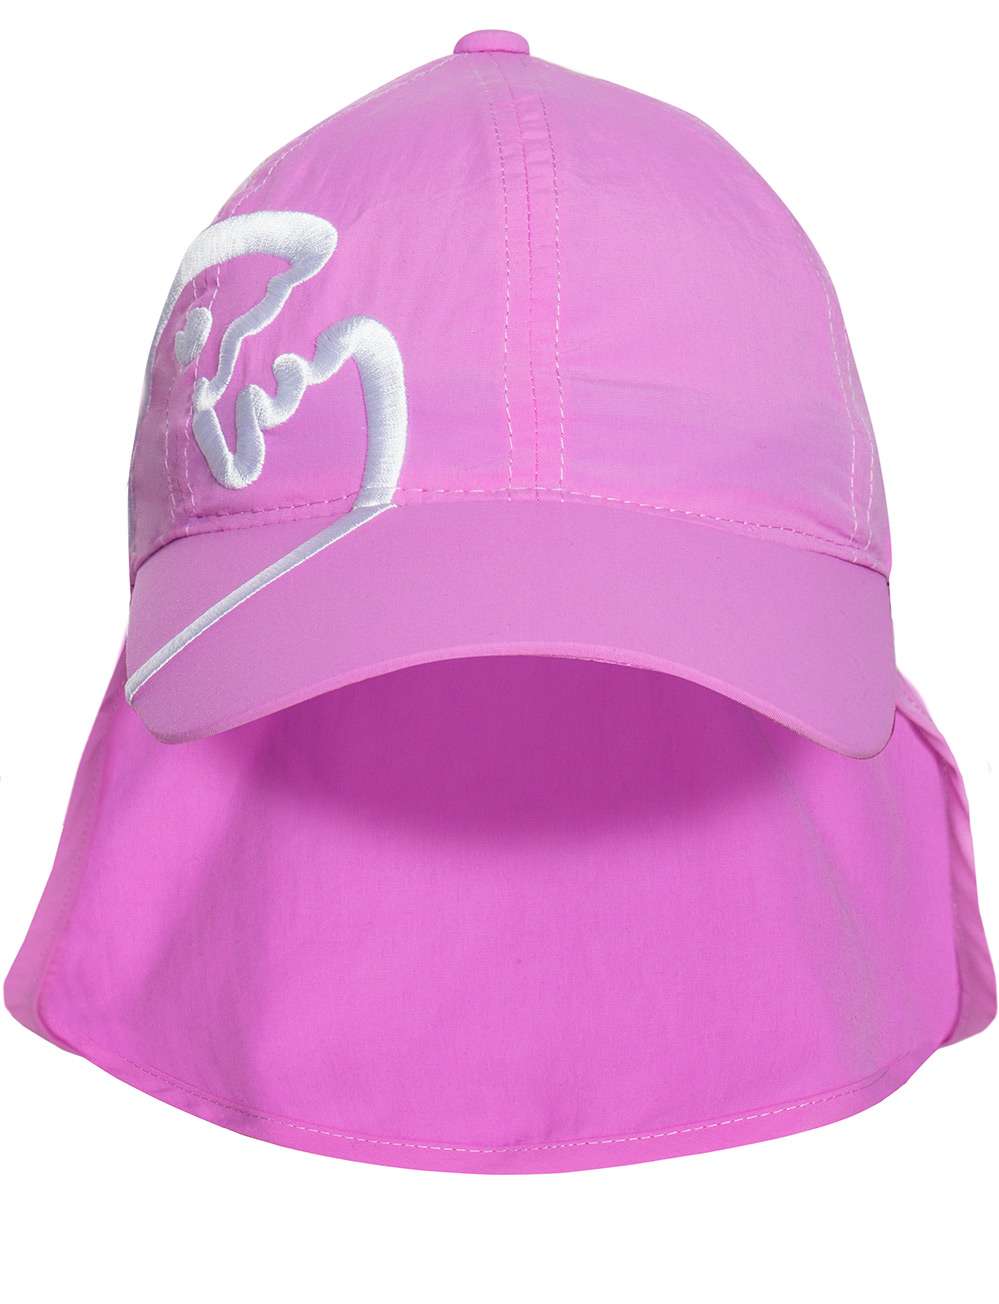 Kinder UV Schutz Cap mit Nackenschutz pink